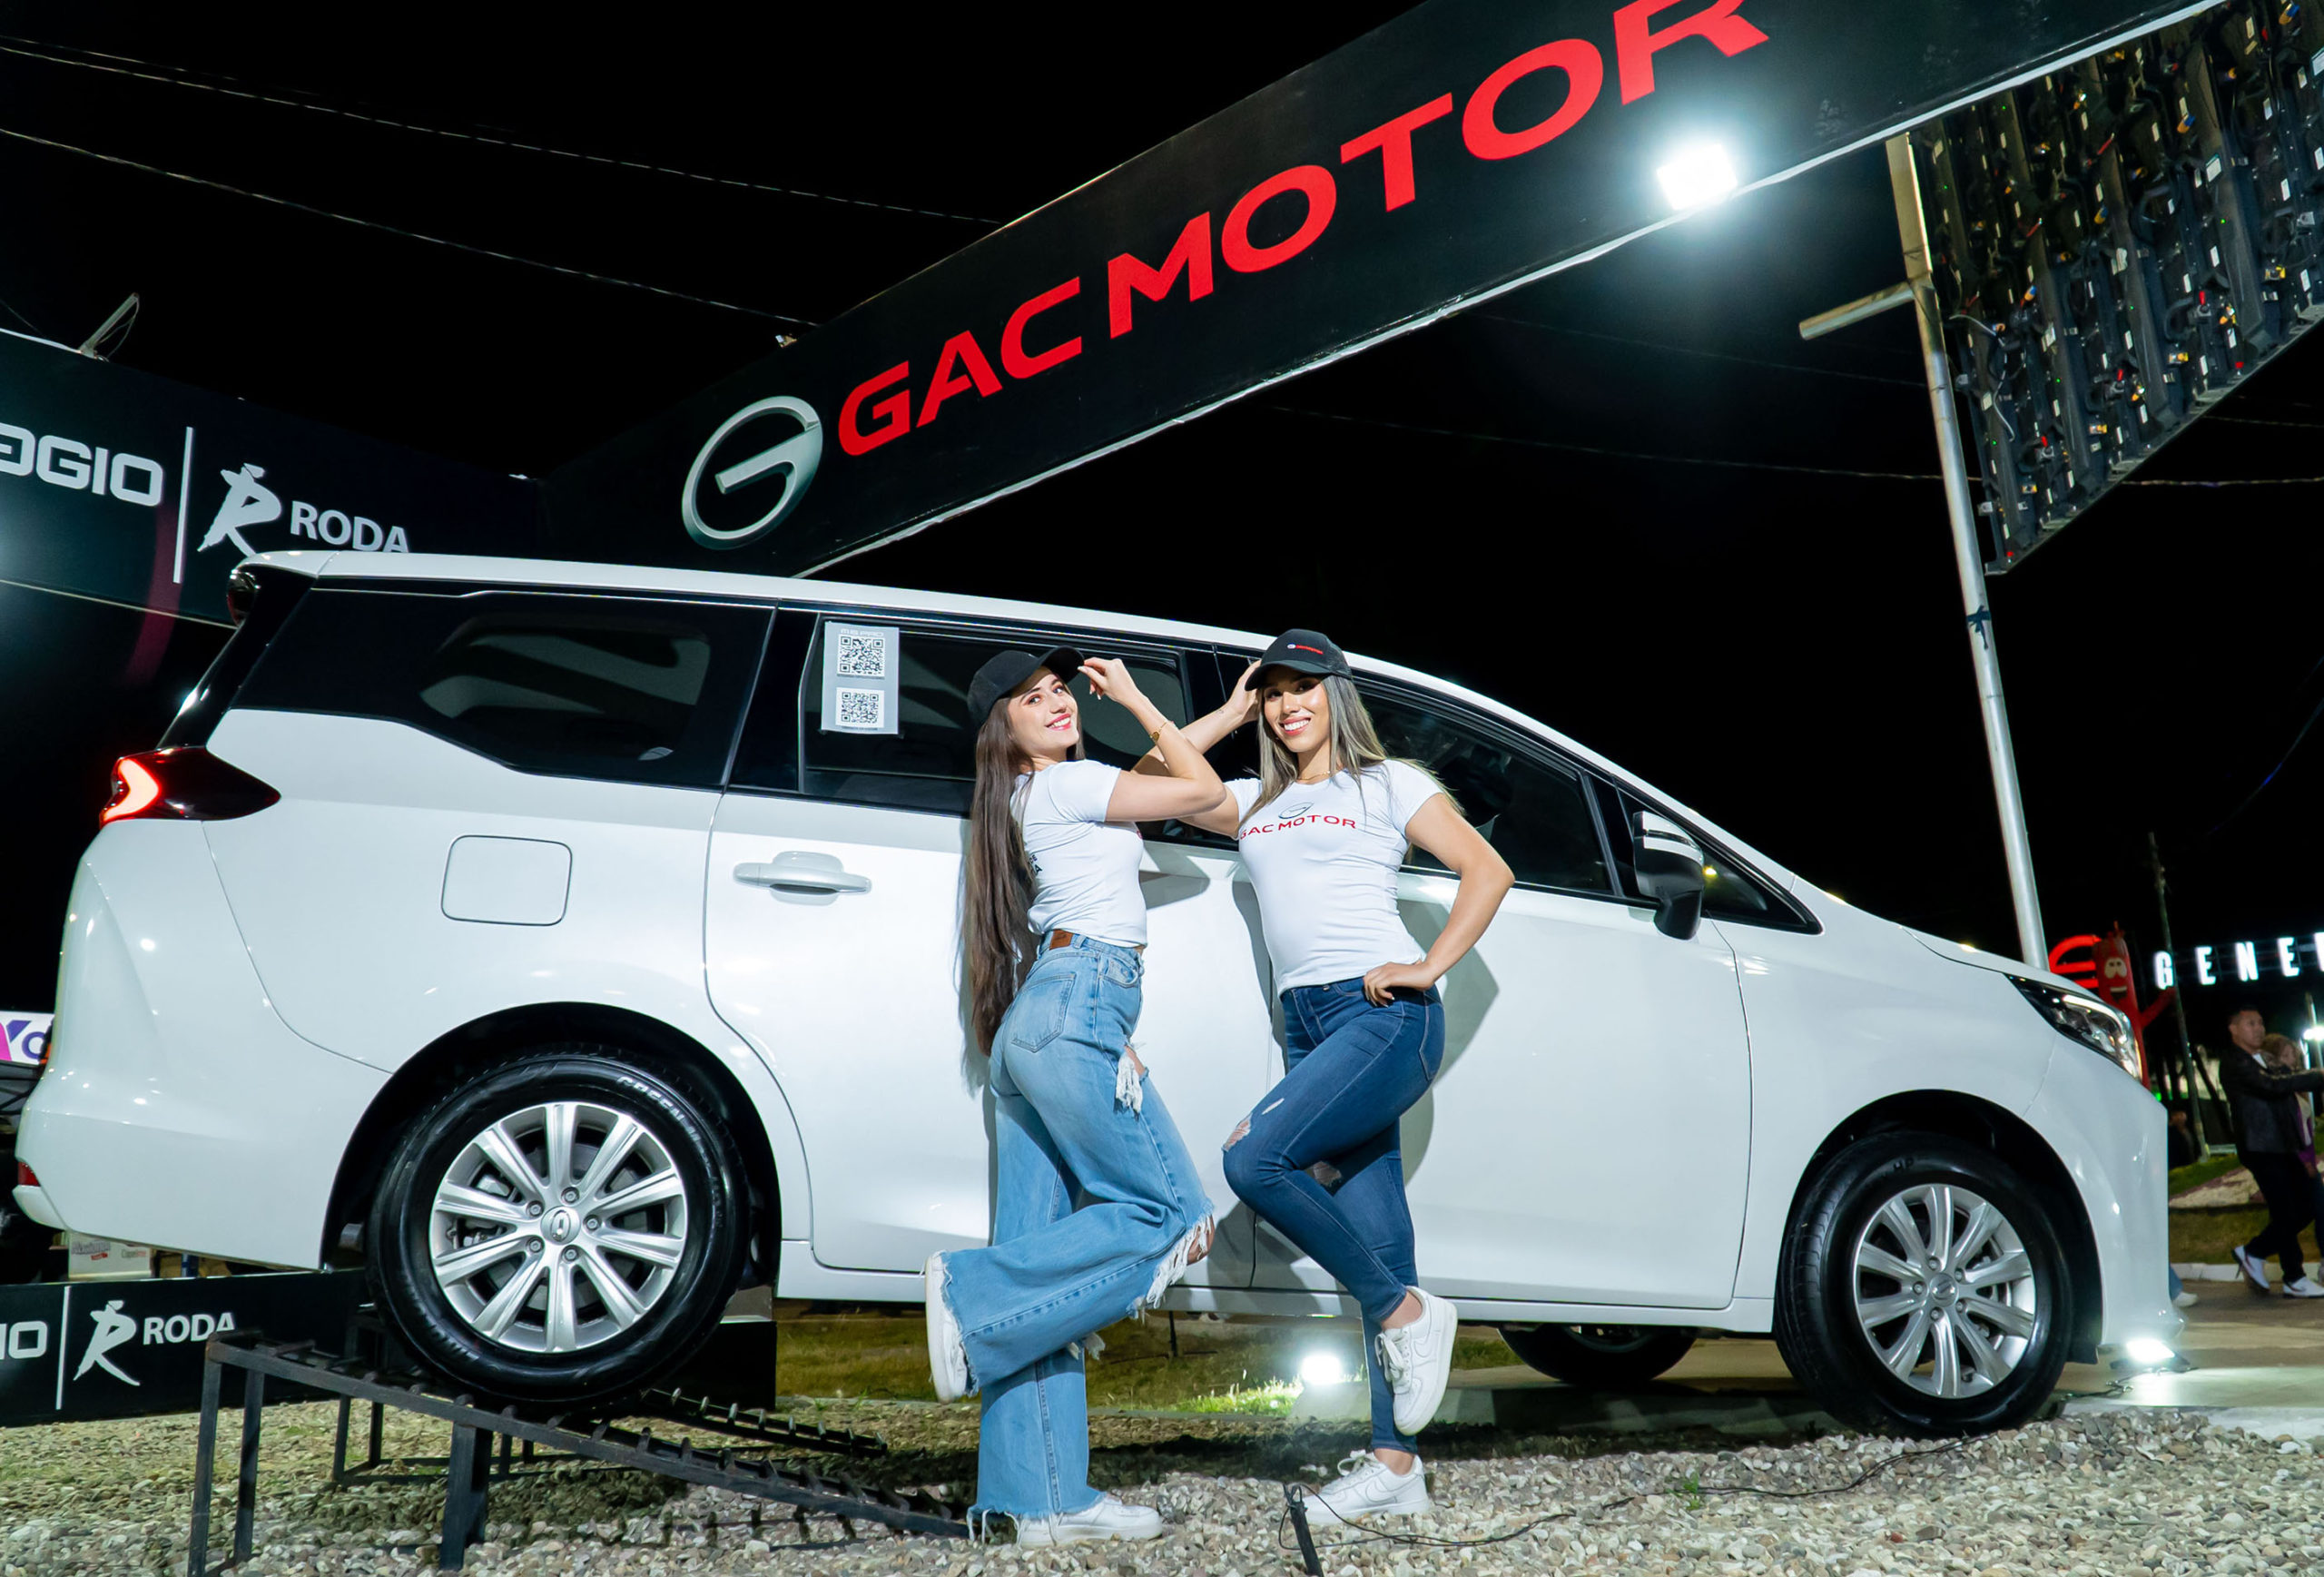 VIAGGIO está presente en Fexco con novedades en GAC Motor y el lanzamiento de HH, su nueva marca de camionetas